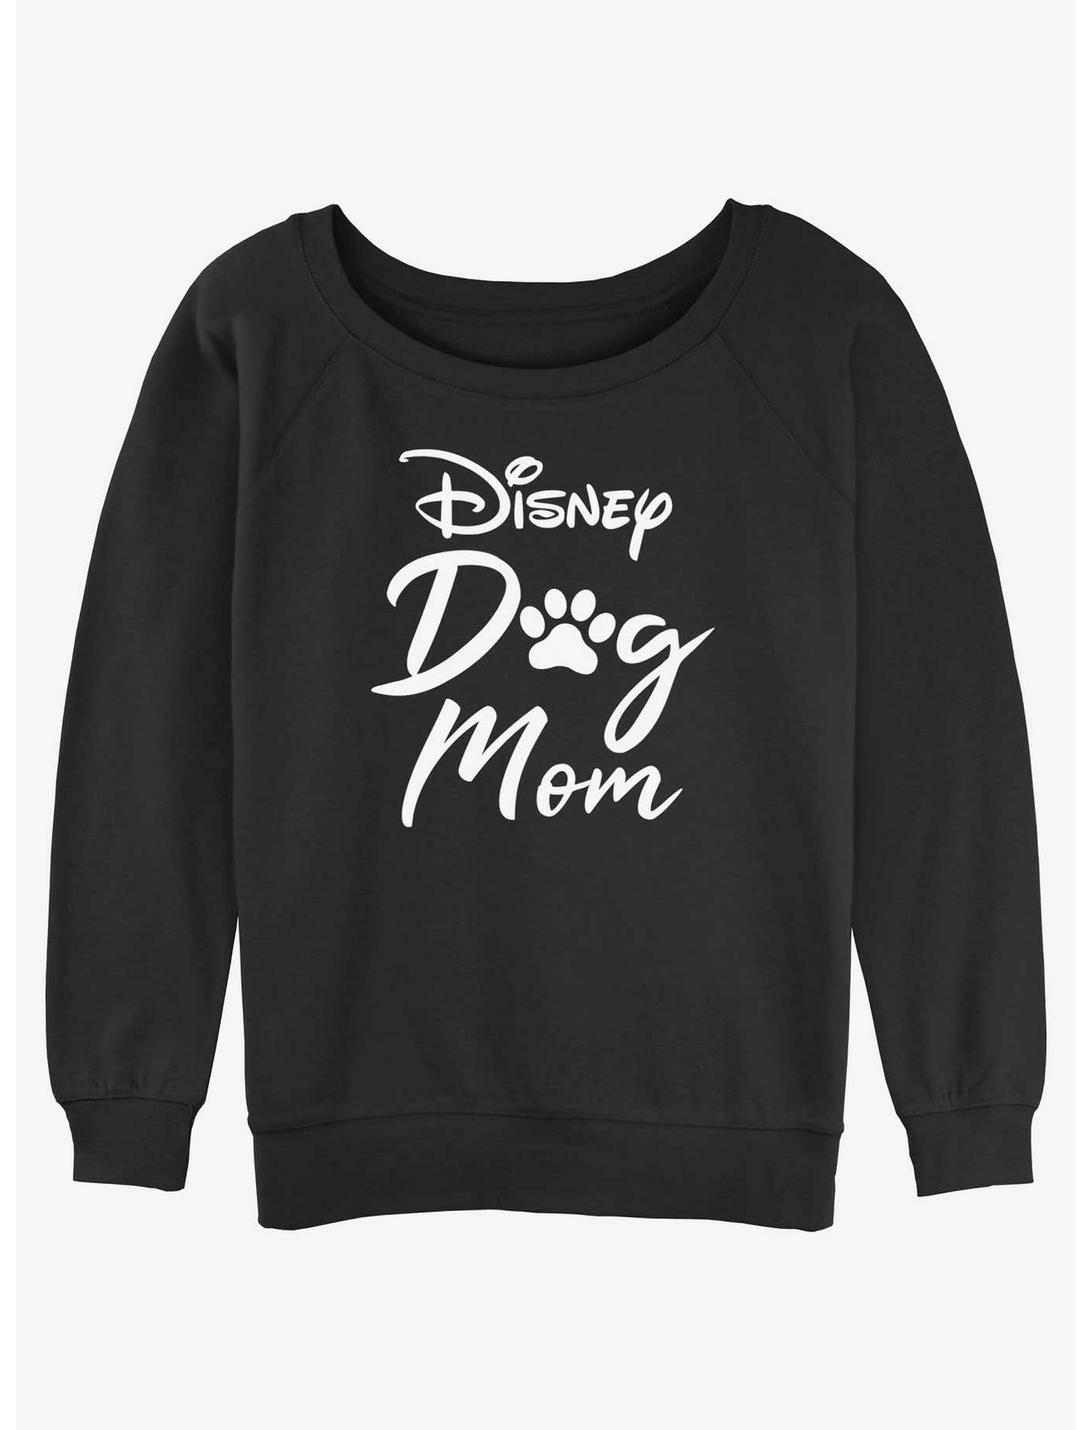 Disney Channel Disney Dog Mom Girls Slouchy Sweatshirt, BLACK, hi-res